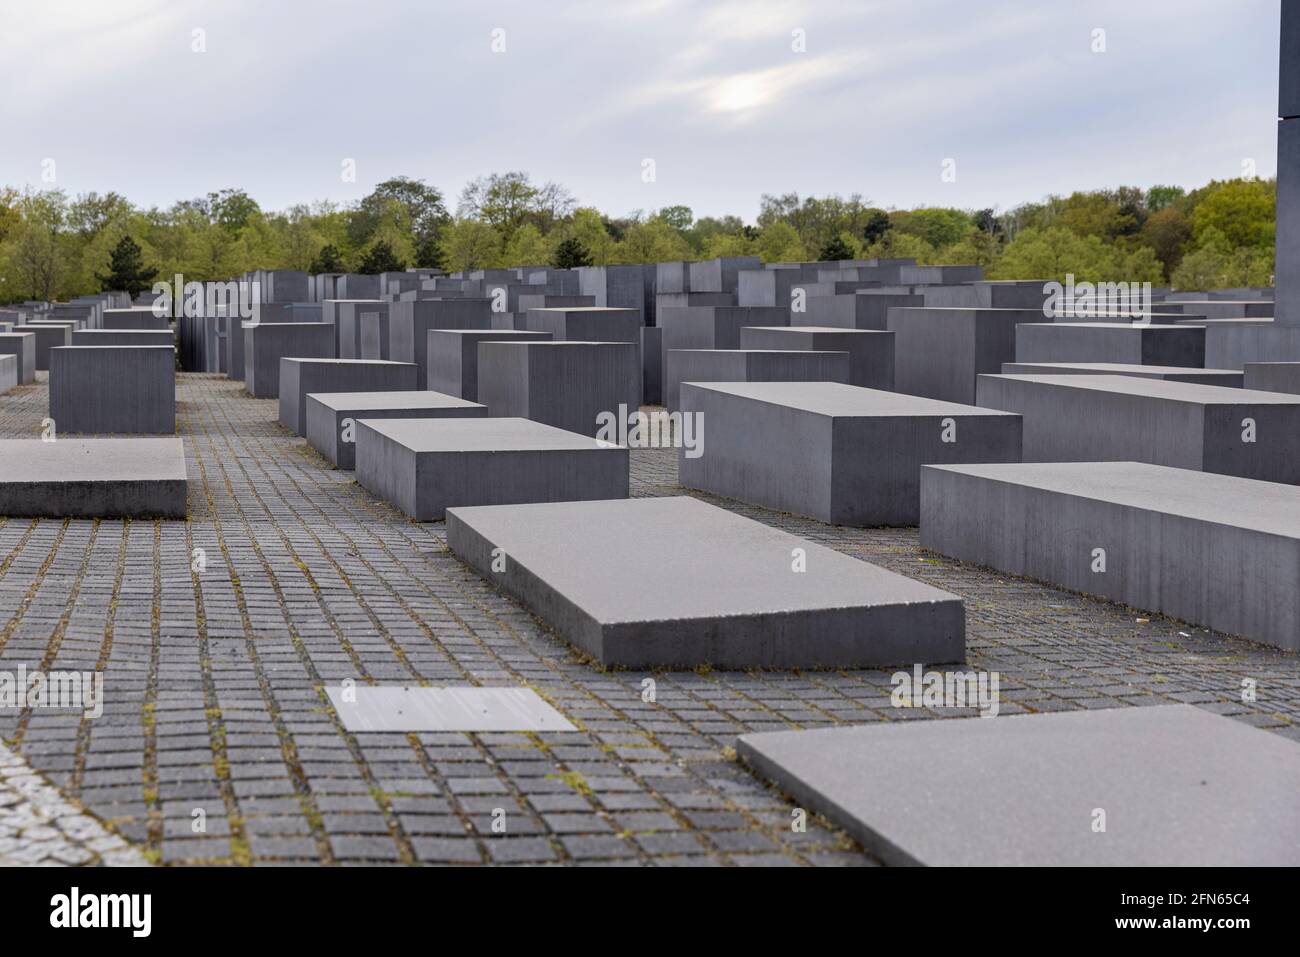 El monumento a los judíos asesinados en Europa es uno de los muchos destinos turísticos de la capital alemana, Berlín. Foto de stock